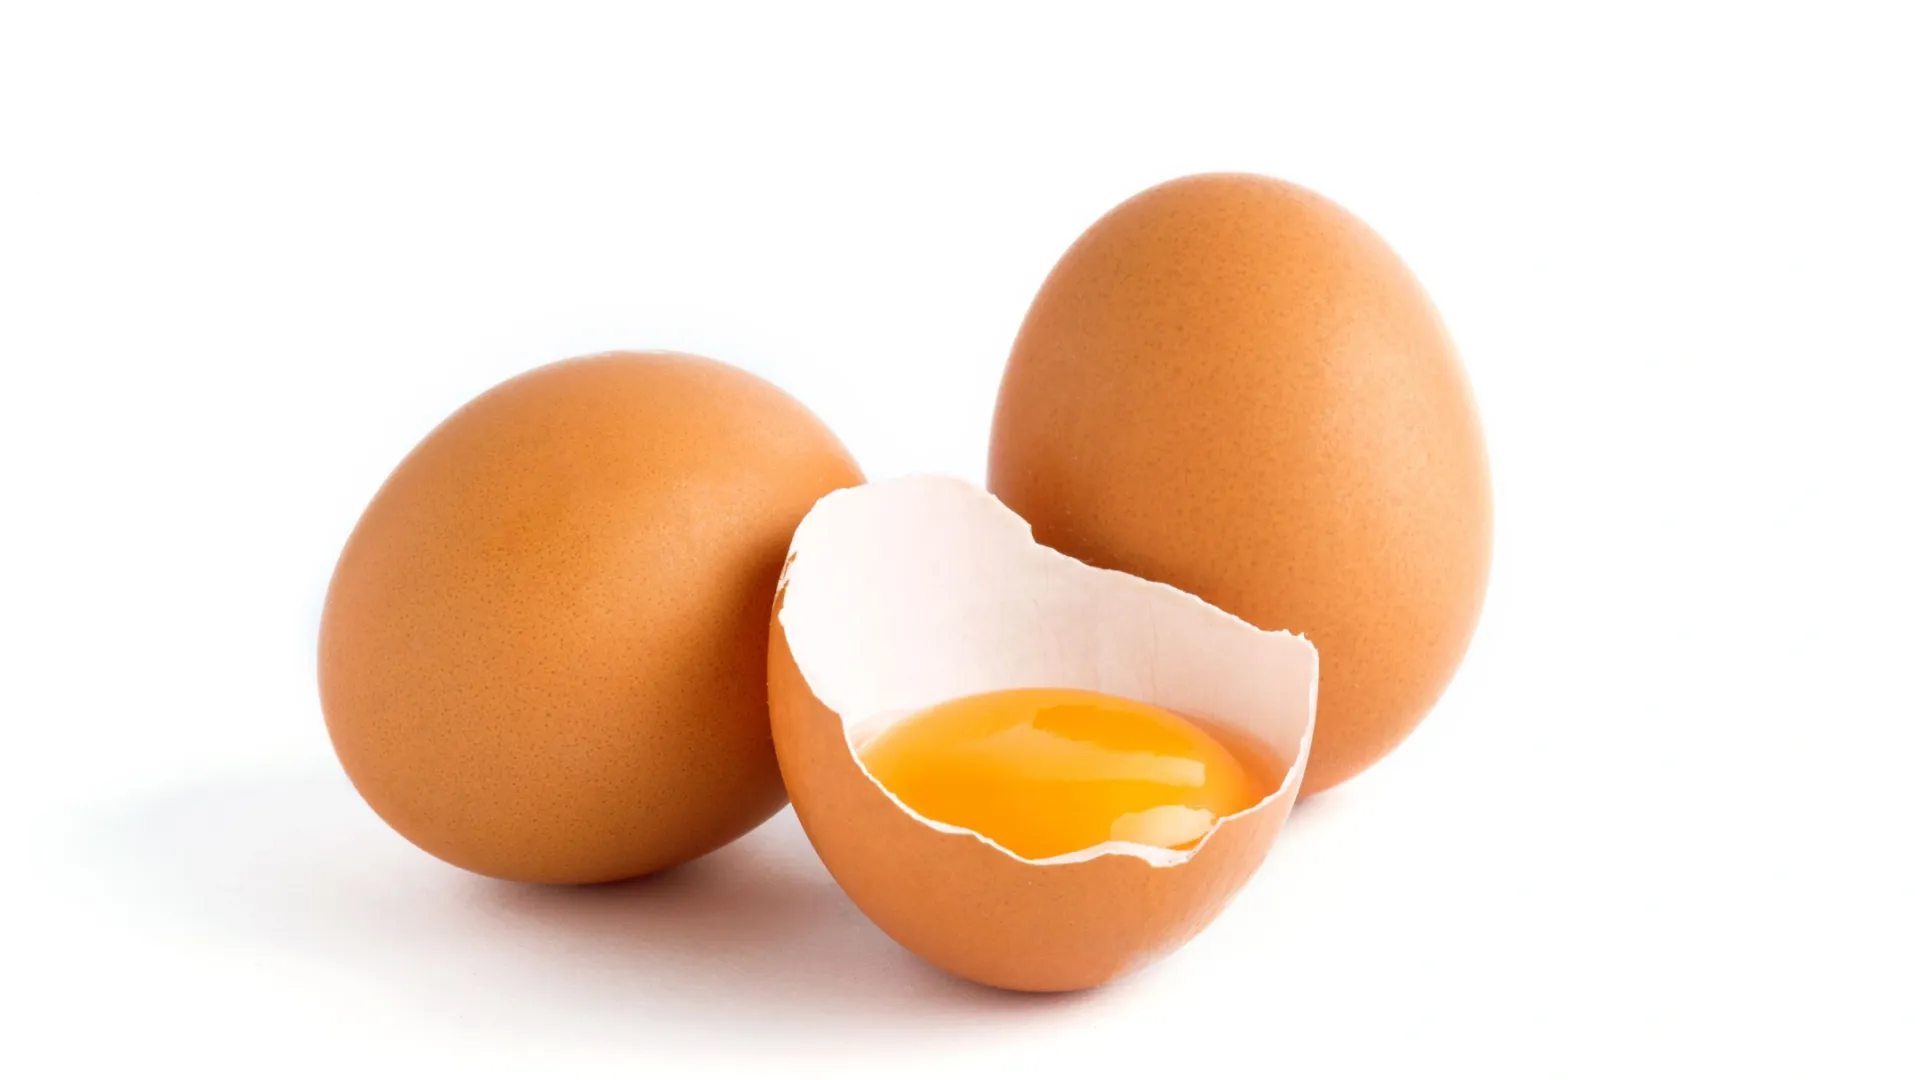 Полезные свойства импортных яиц такие же, как и у отечественных. Фото: virtu studio / Shutterstock / Fotodom